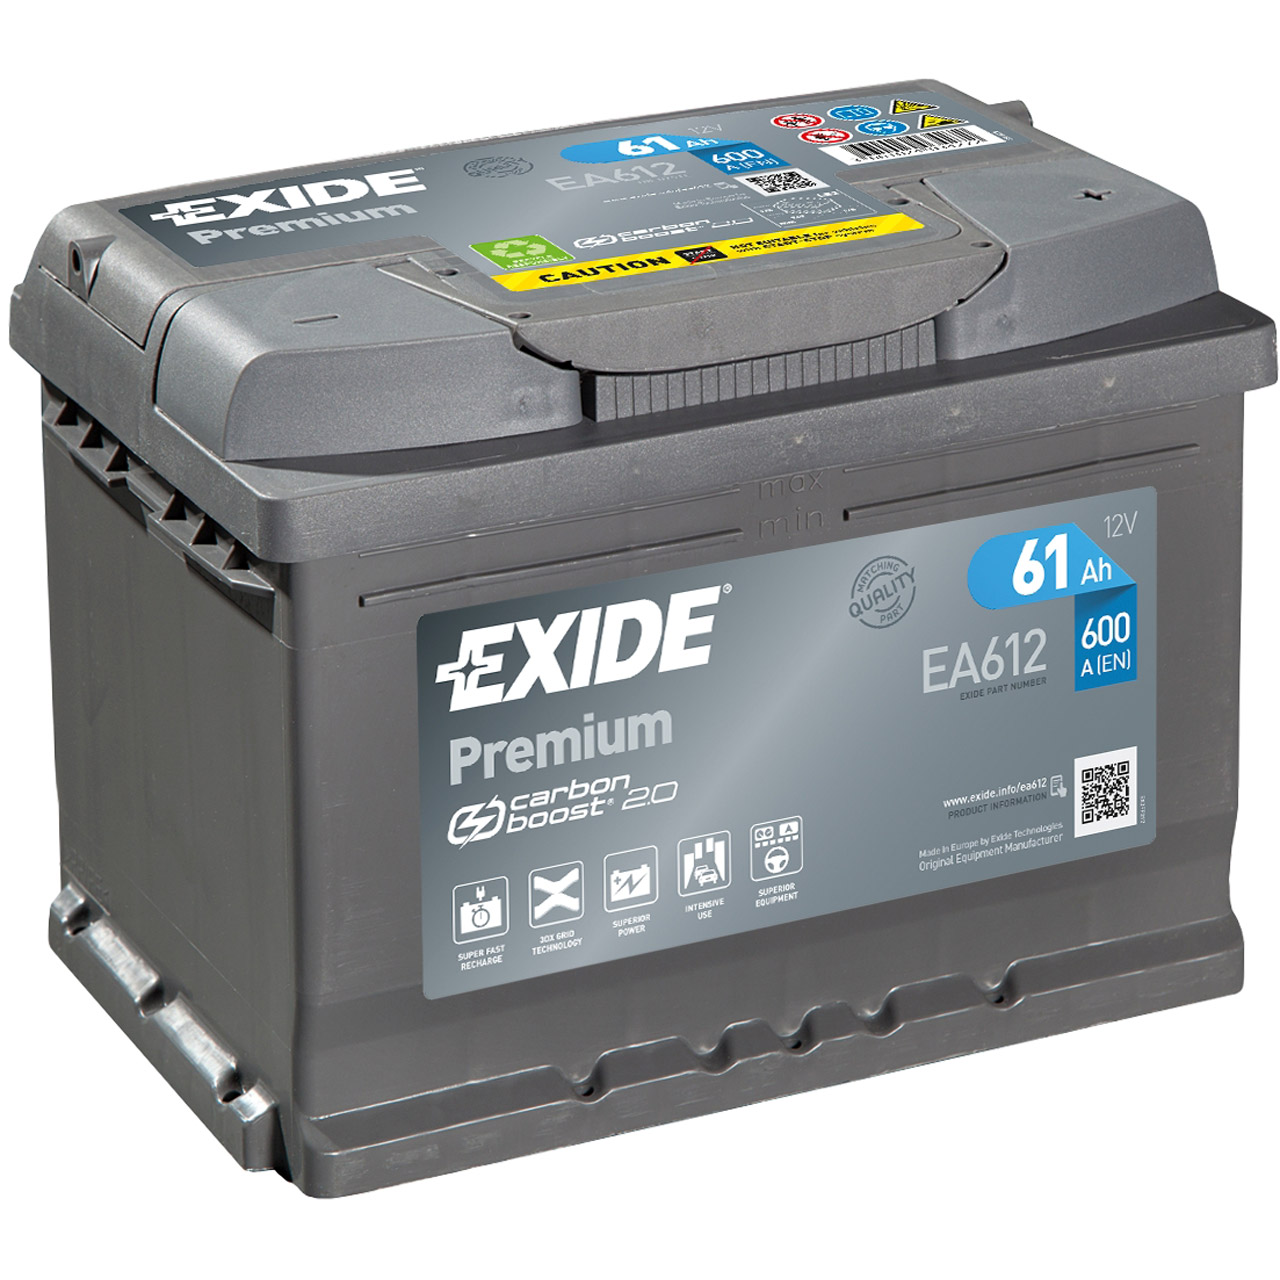 EXIDE EA612 PREMIUM Autobatterie Batterie Starterbatterie 12V 61Ah EN600A